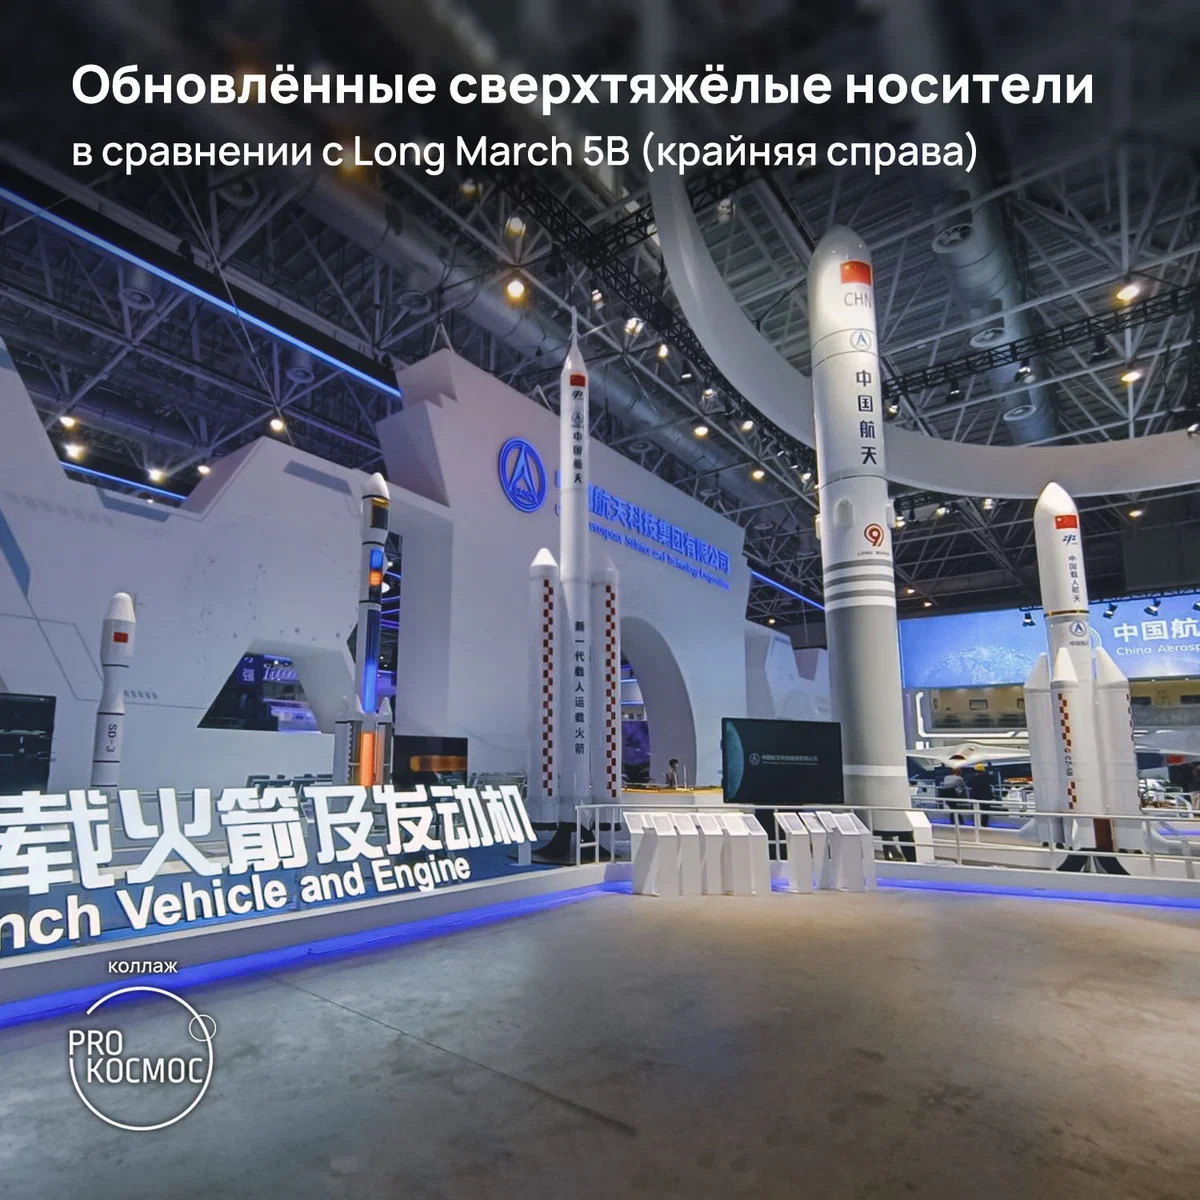 Авиакосмический салон в Чжухае: многоразовые сверхтяжёлые носители и ракетопланы Китая height=1200px width=1200px